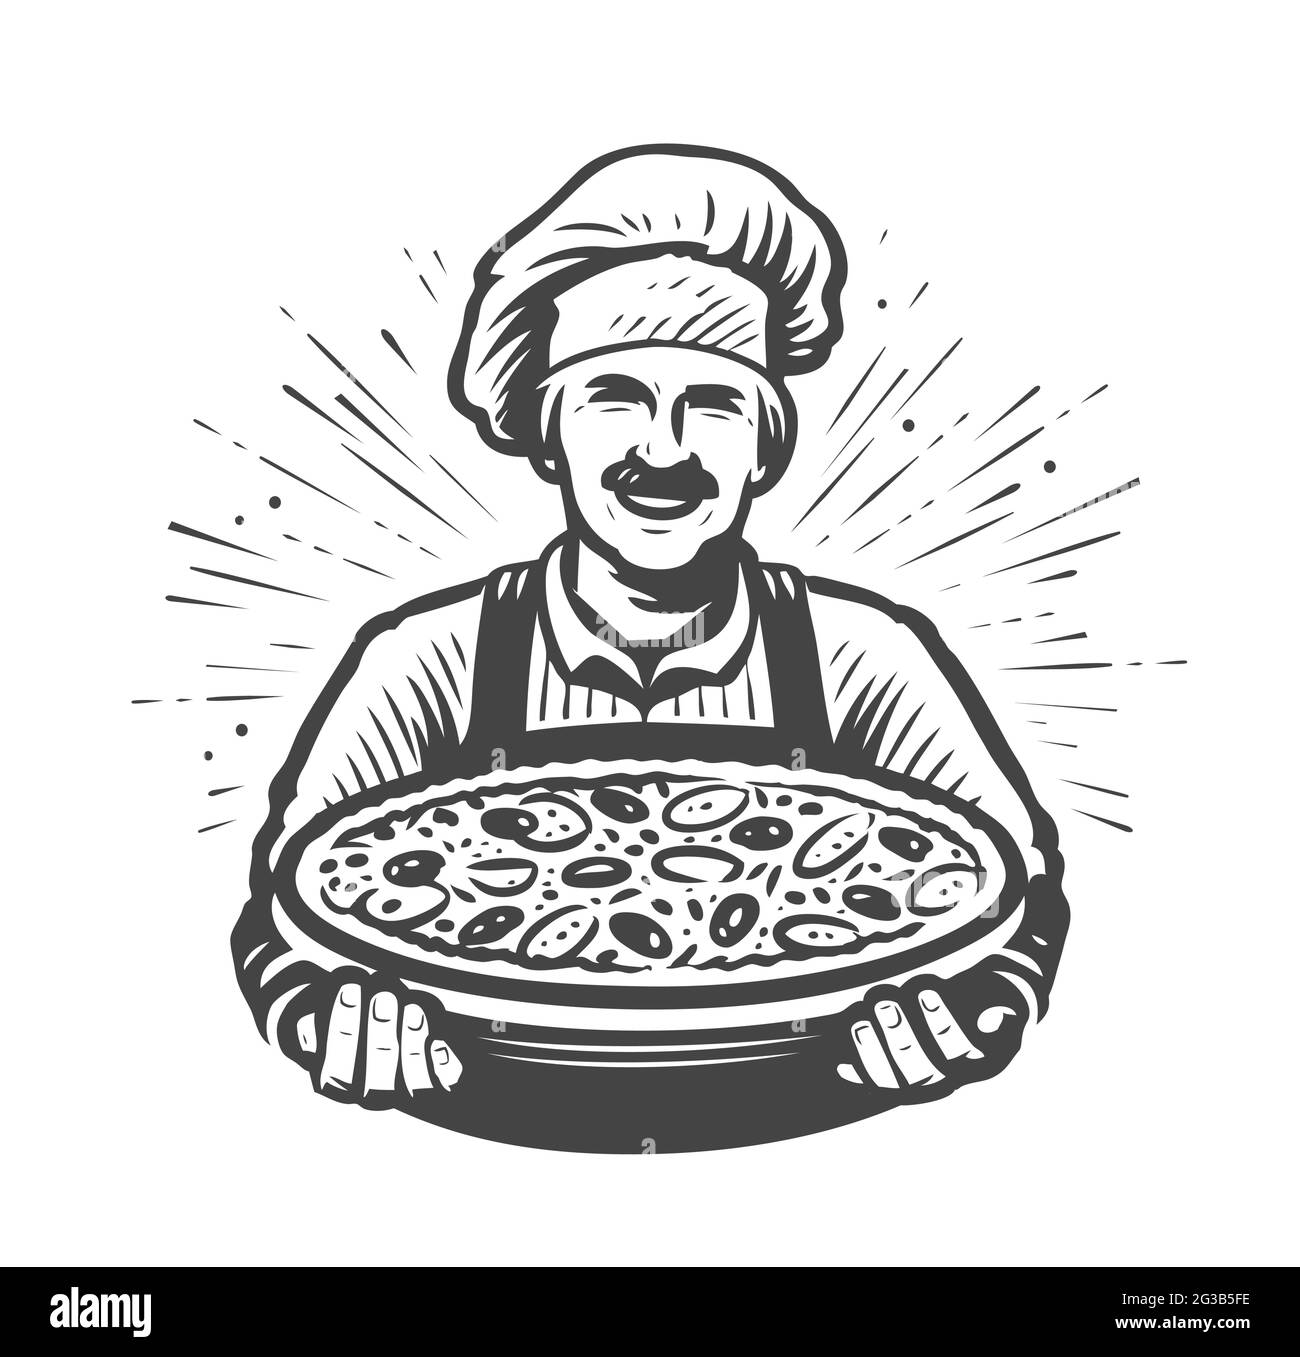 Cucinare il logo della pizza. Ristorante, simbolo del cibo illustrazione vettoriale Illustrazione Vettoriale